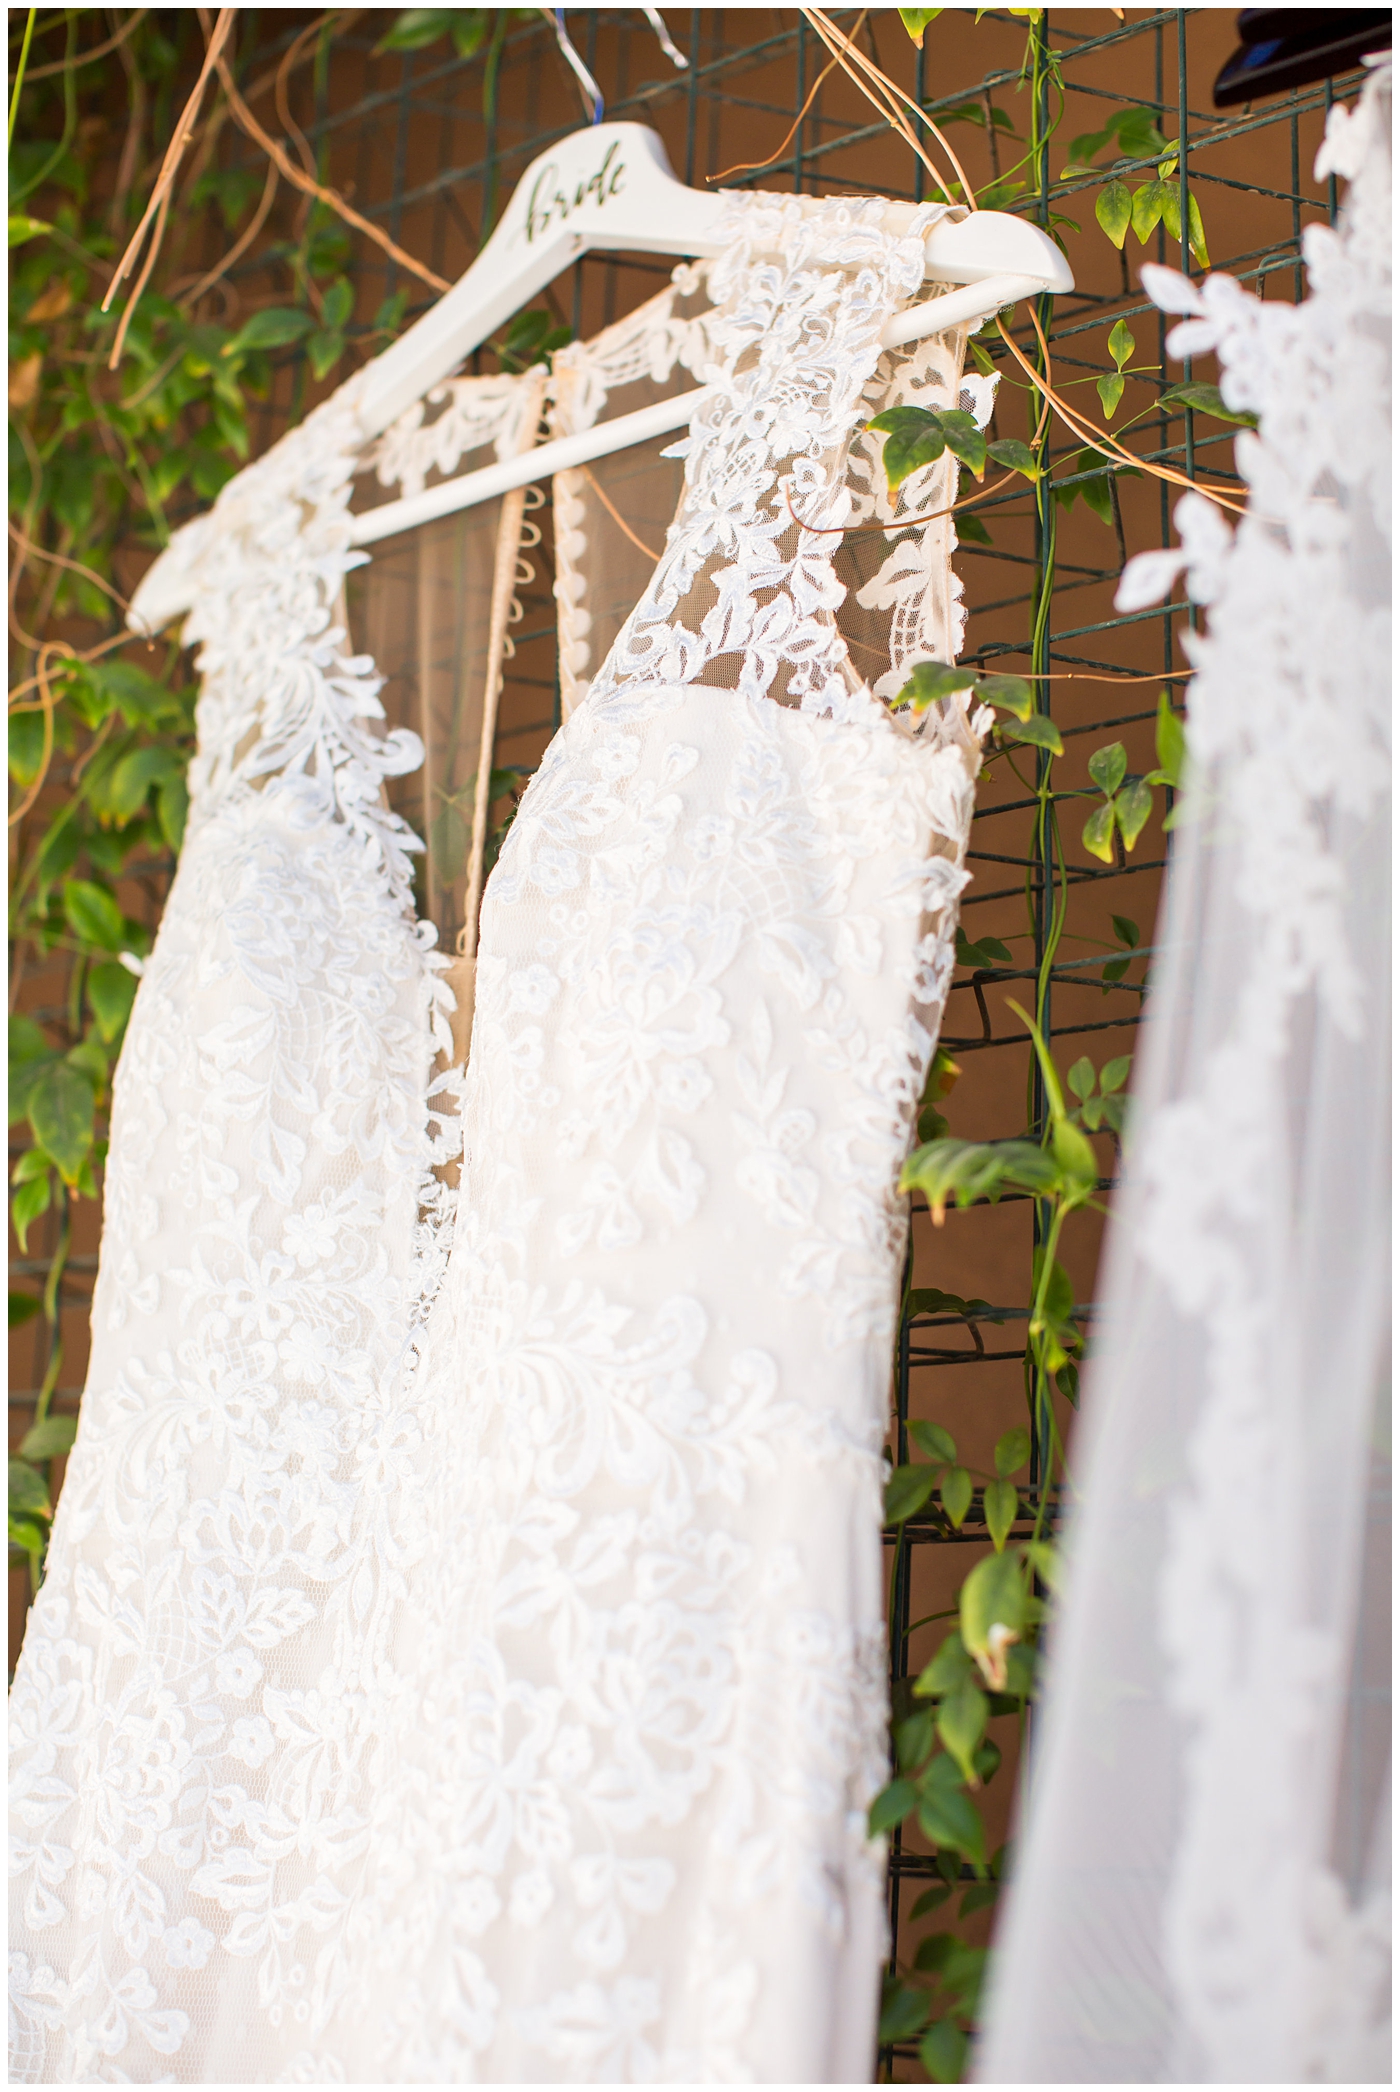 beautiful Justina Alexander wedding dress hanging up